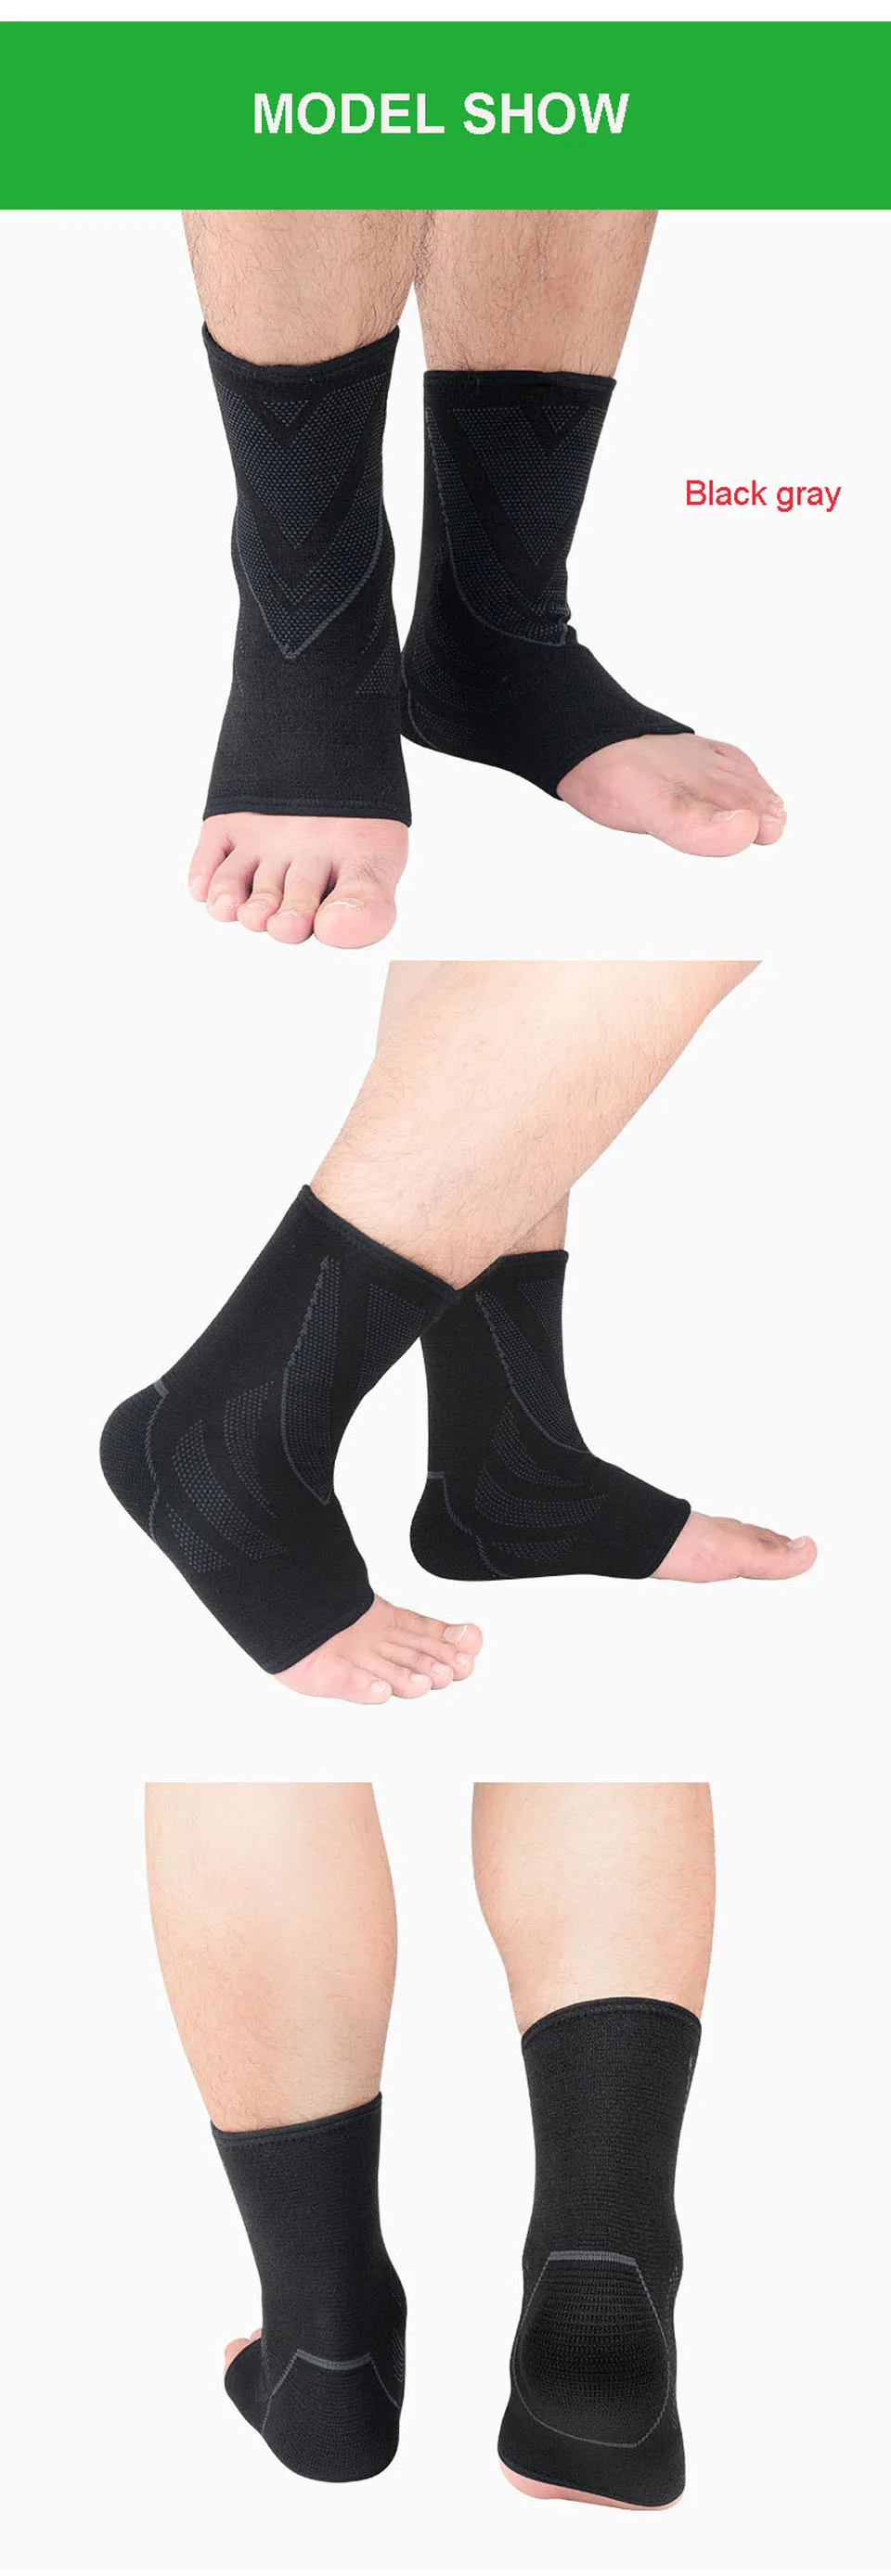 GOBYGO 1 шт. фиксатор лодыжки компрессионная поддержка рукав эластичный дышащий для восстановления травм суставов боли корзина для ног спортивные носки